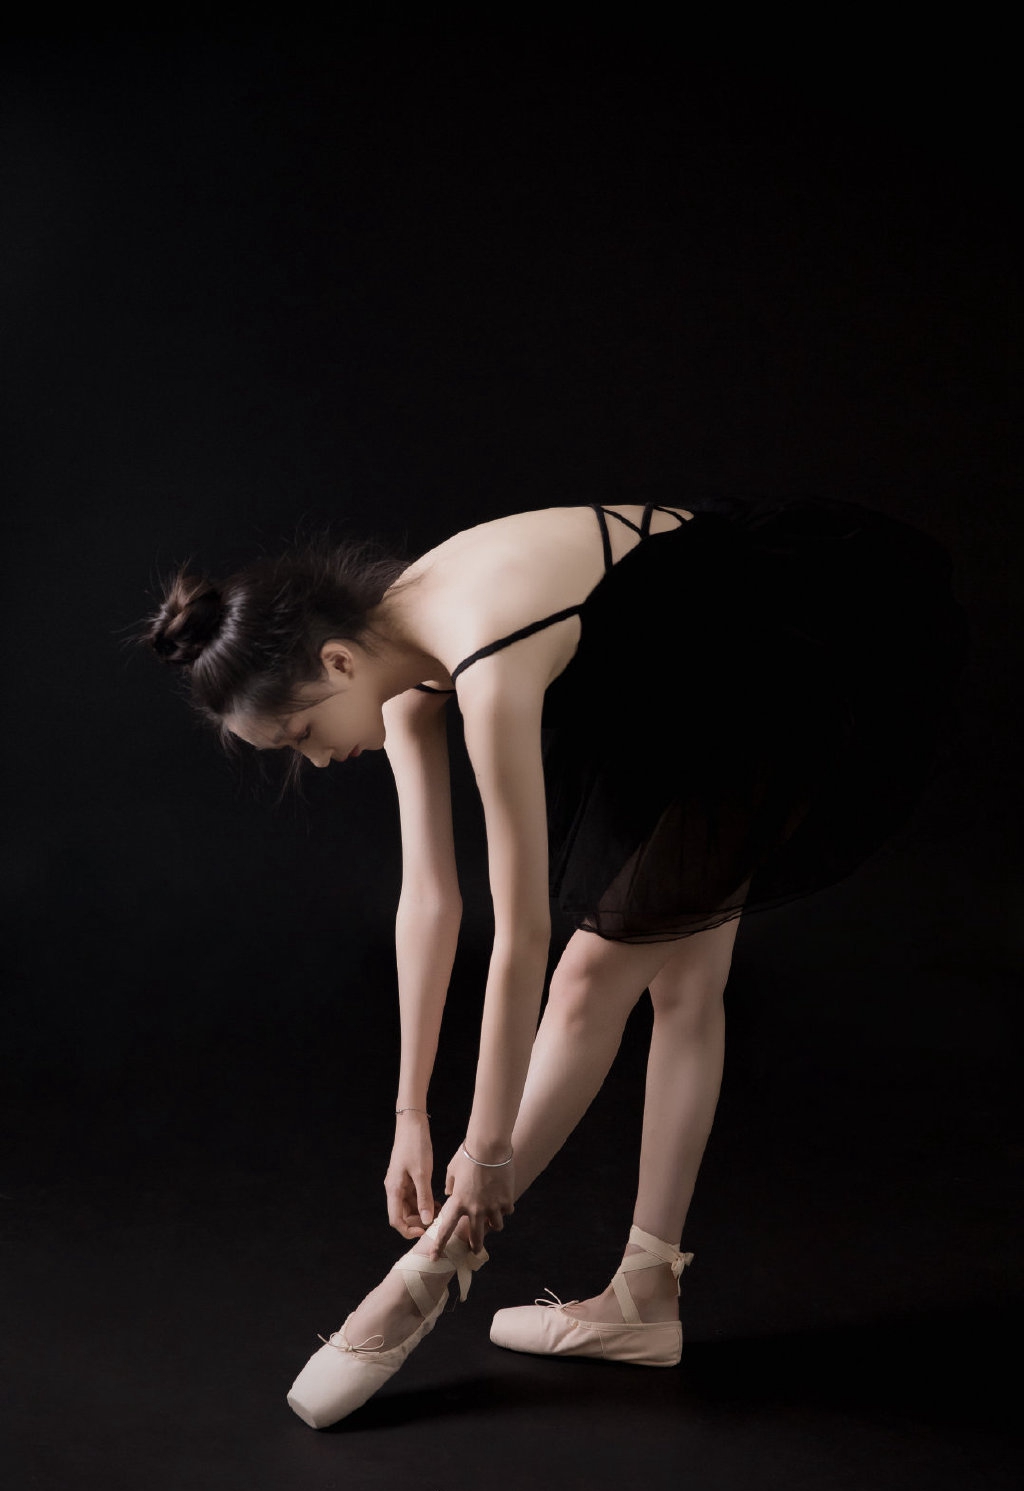 芭蕾舞性感长腿美女黑天鹅私人艺术摄影  第7张